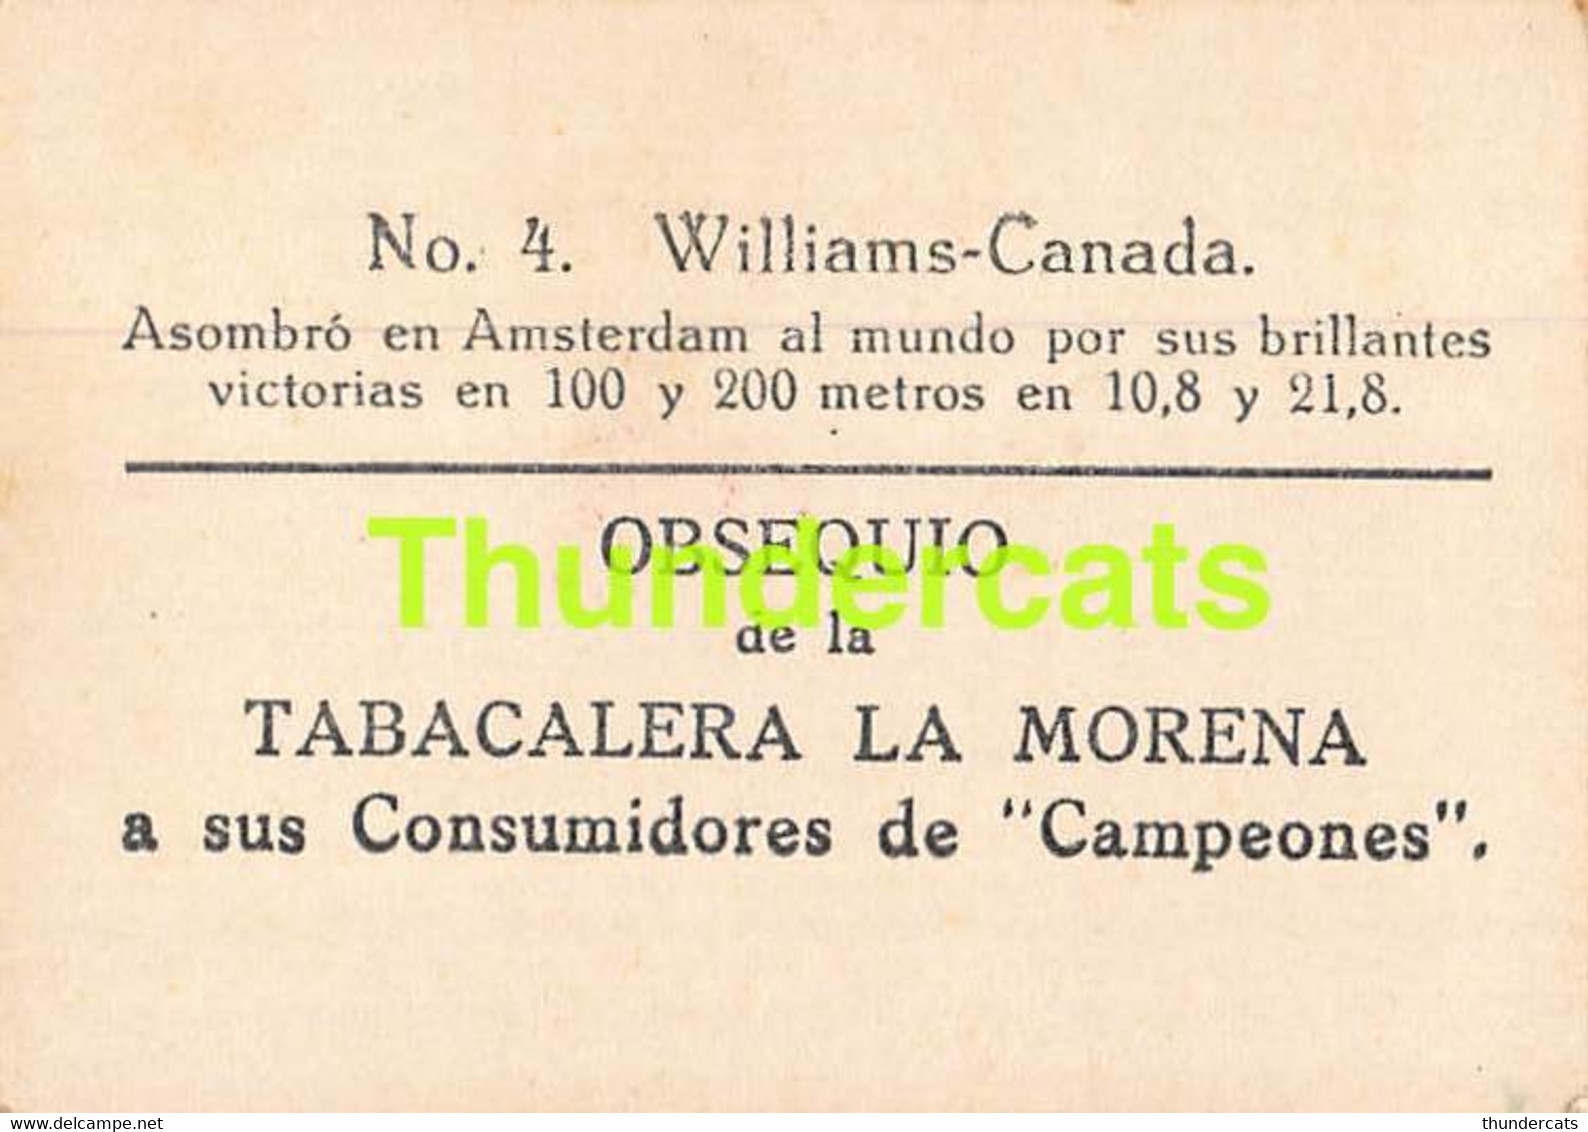 VINTAGE TRADING TOBACCO CARD CHROMO ATHLETICS 1928 TABACALERA LA MORENA No 4 WILLIAMS CANADA - Athlétisme